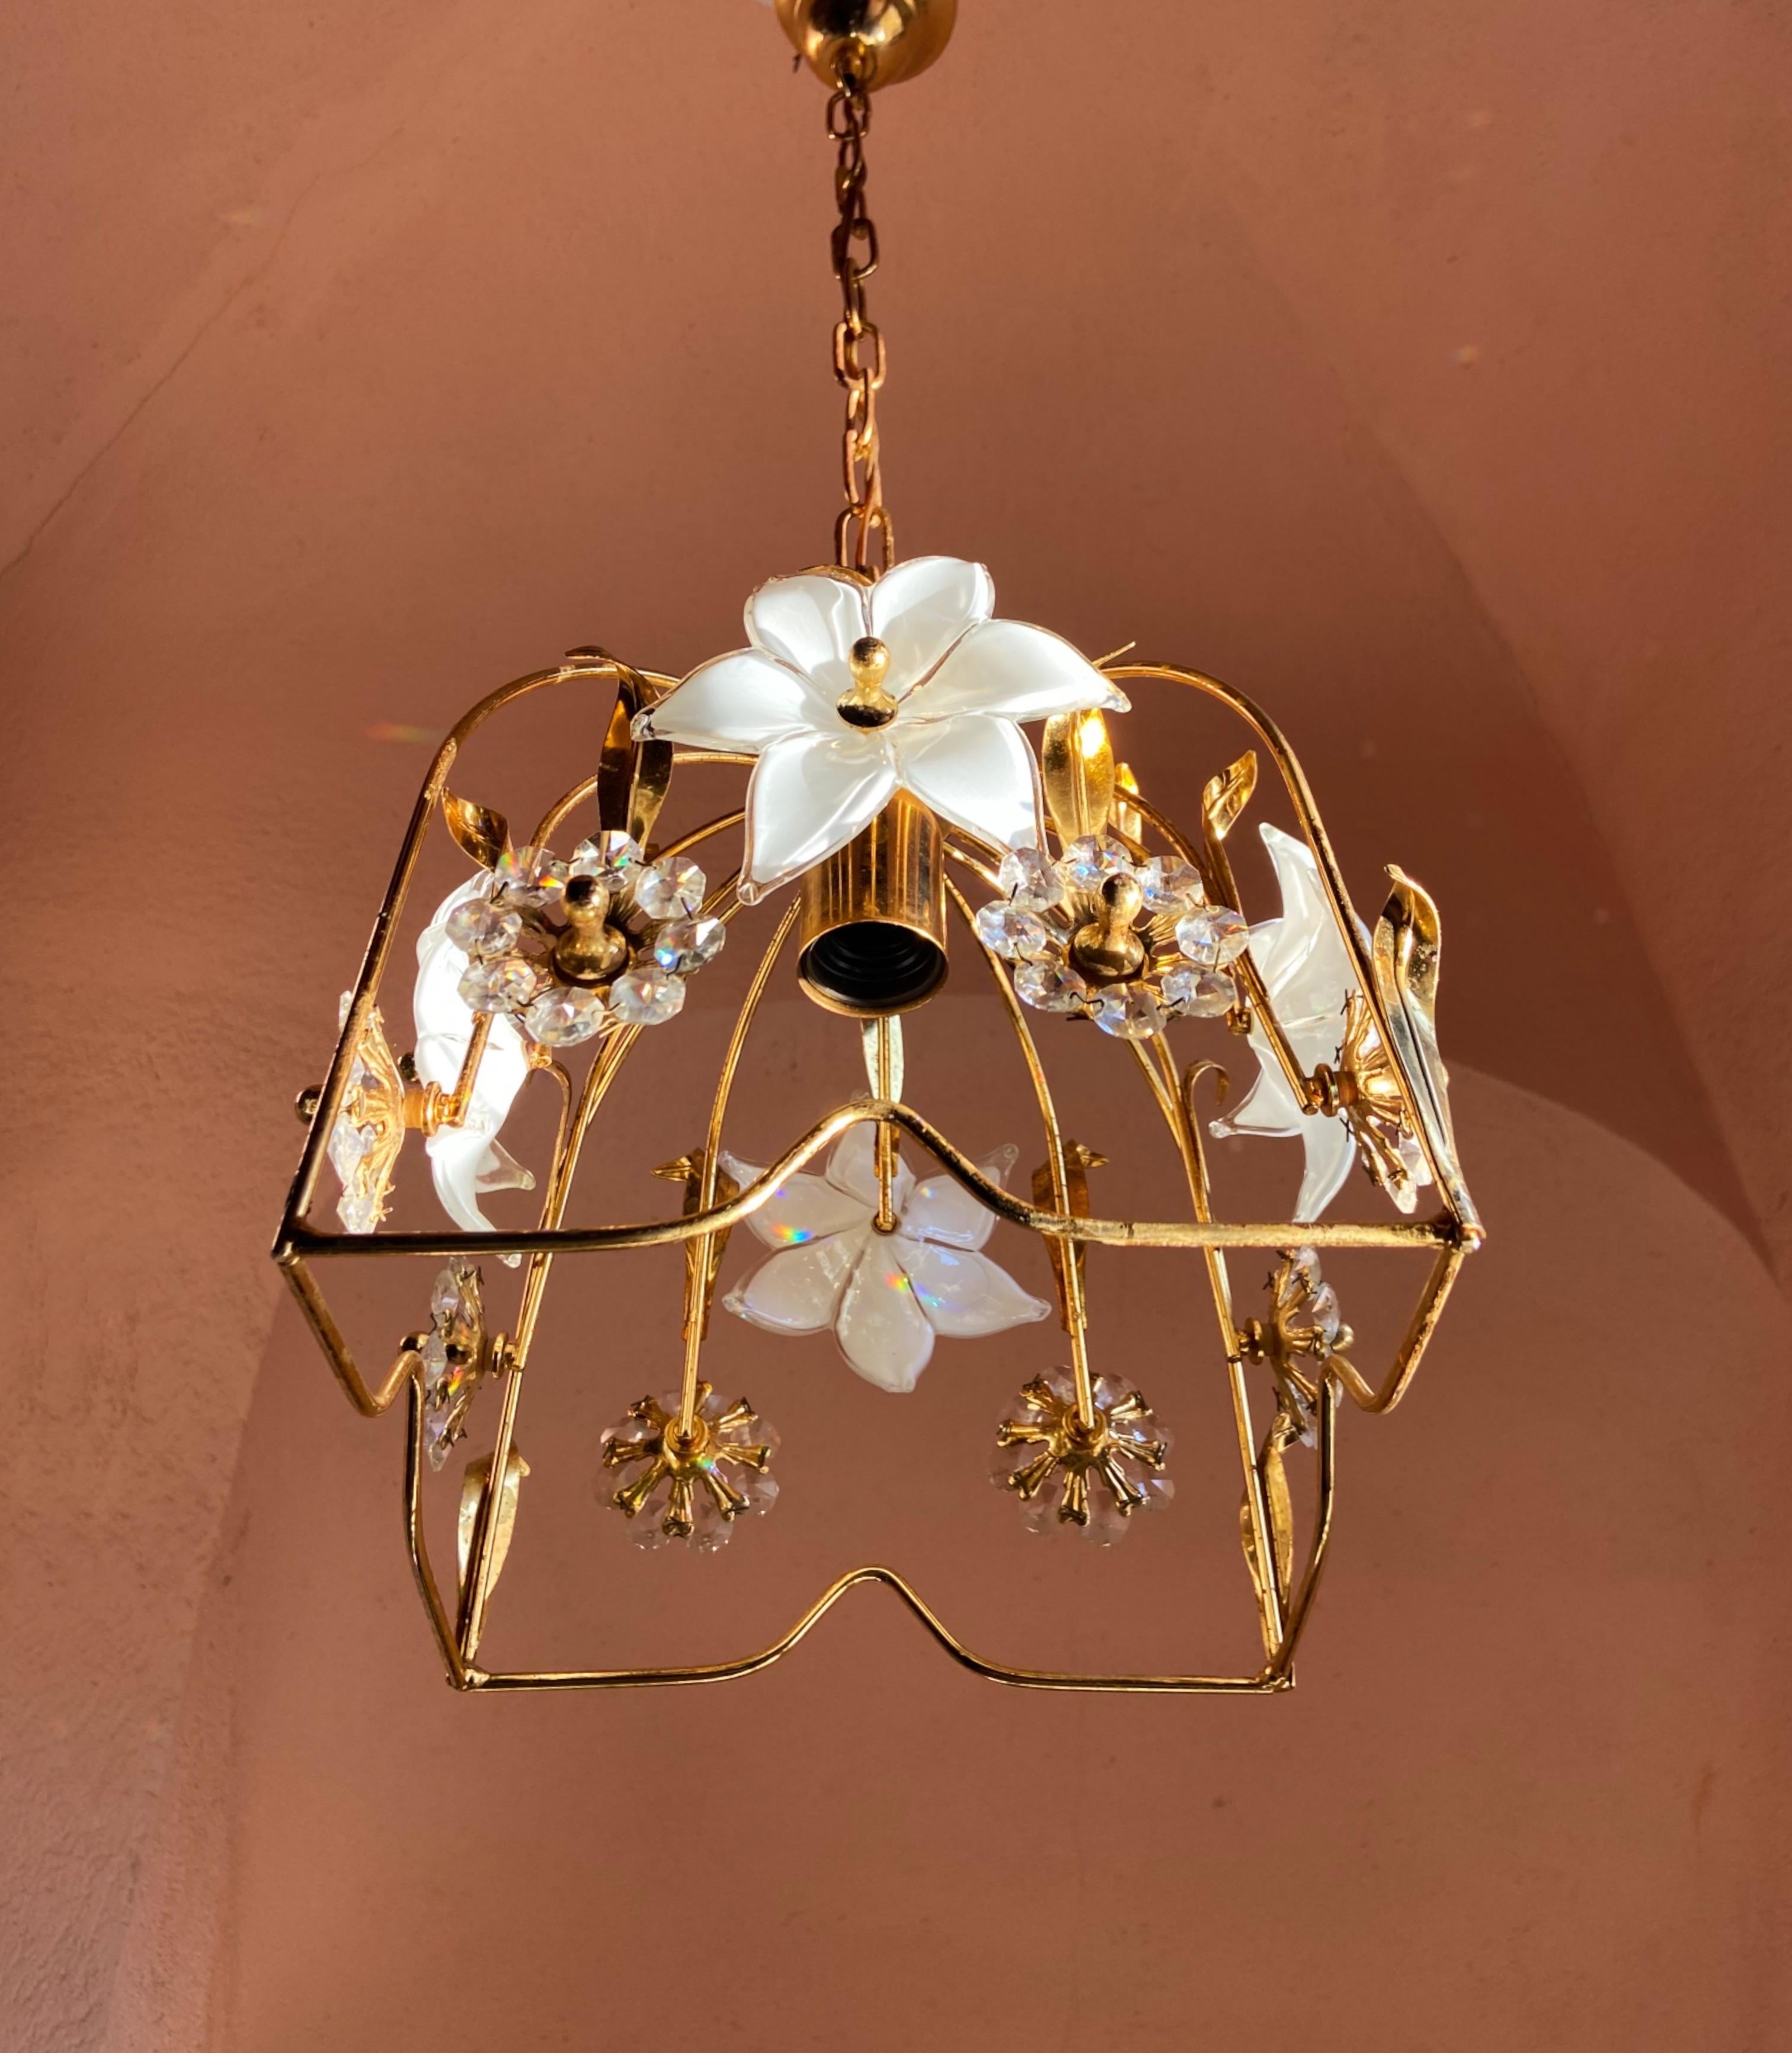 Charmant plafonnier, composé d'une base dorée ornée de fleurs blanches en verre de Murano.
Chaque fleur est unique dans sa forme car elles sont soufflées à la main.
Les verres sont sans éclats, la base en métal est patinée.

Détails
Dimensions :